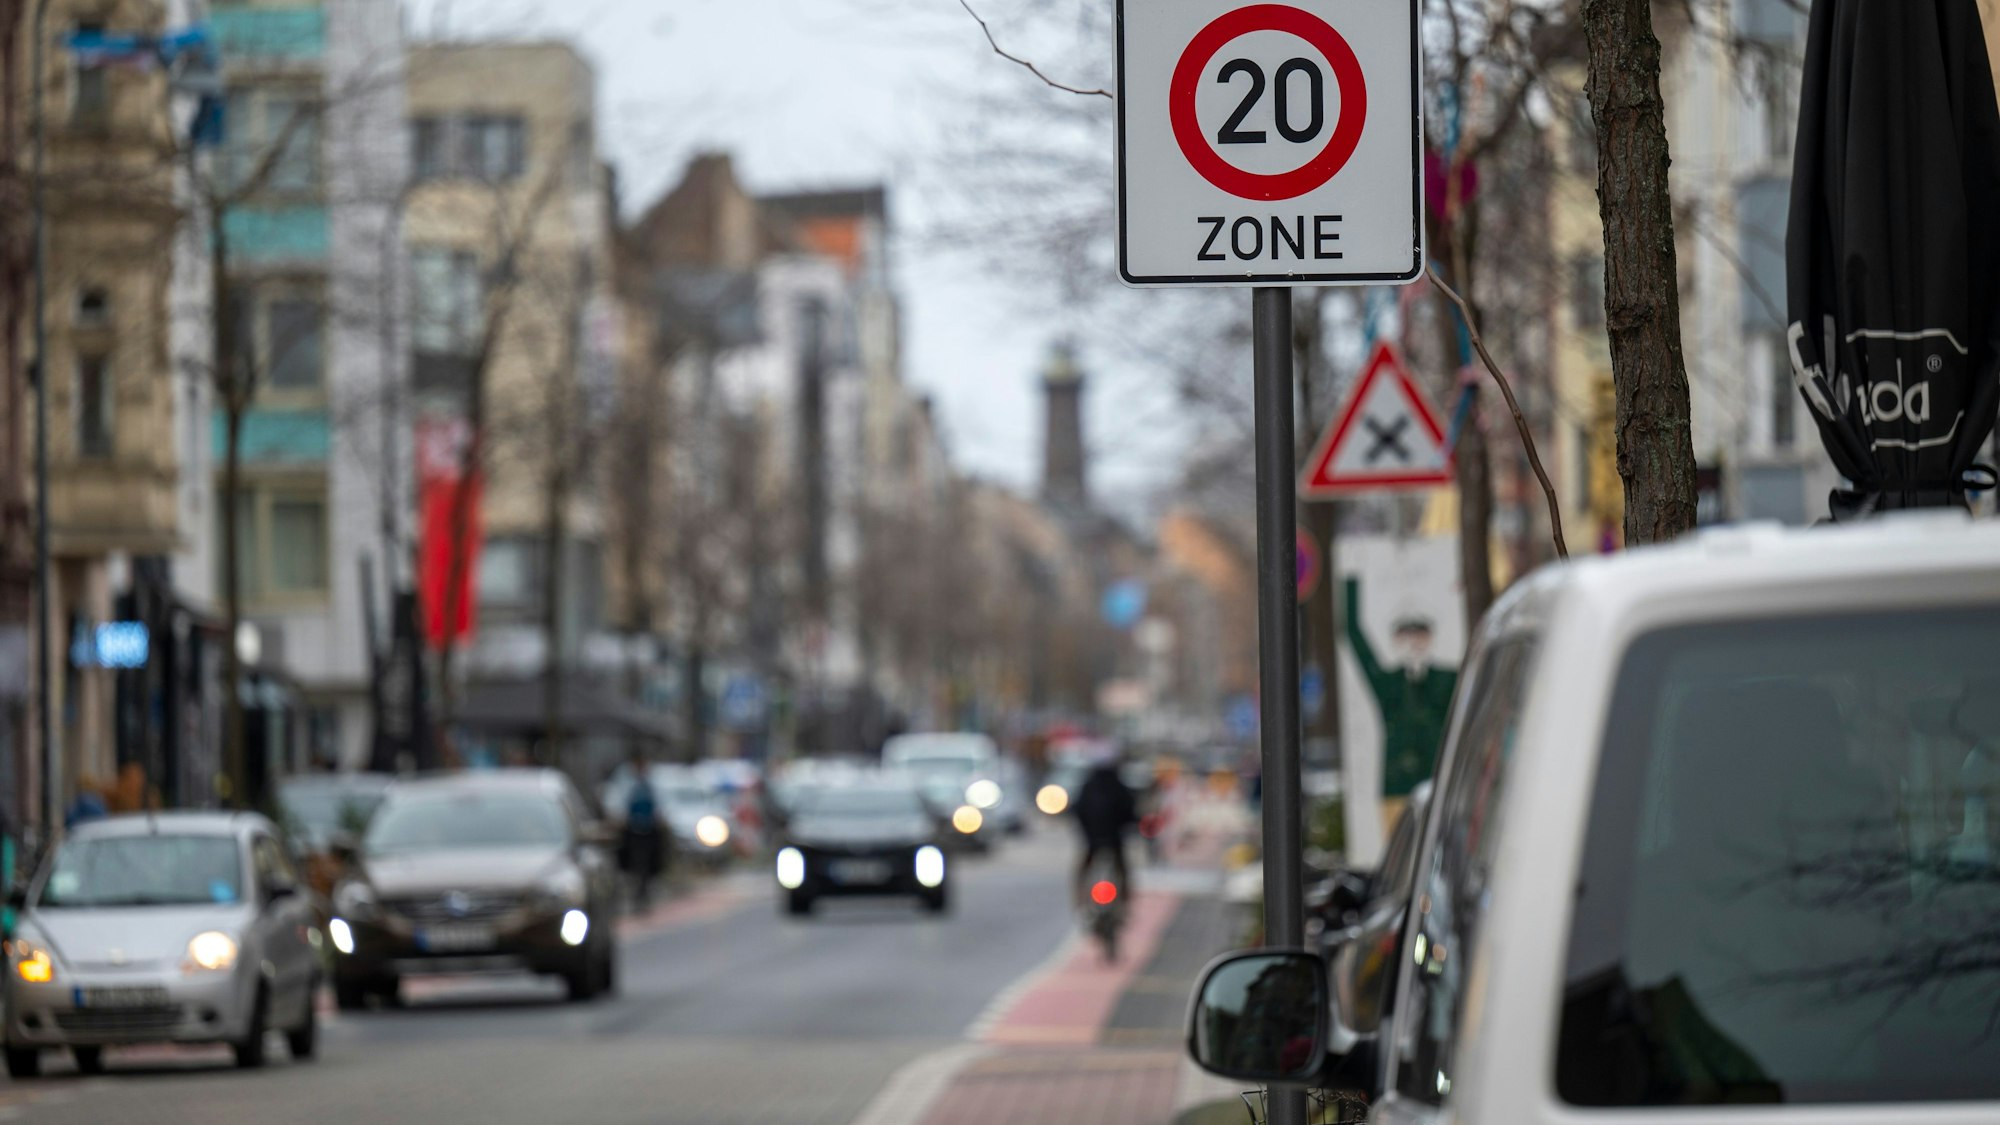 10.01.2023, Köln: In der Venloer Straße stehen Tempo 20 Schilder. In diesem Verkehrsversuch soll der Straßenverkehr beruhigt werden. Foto: Uwe Weiser